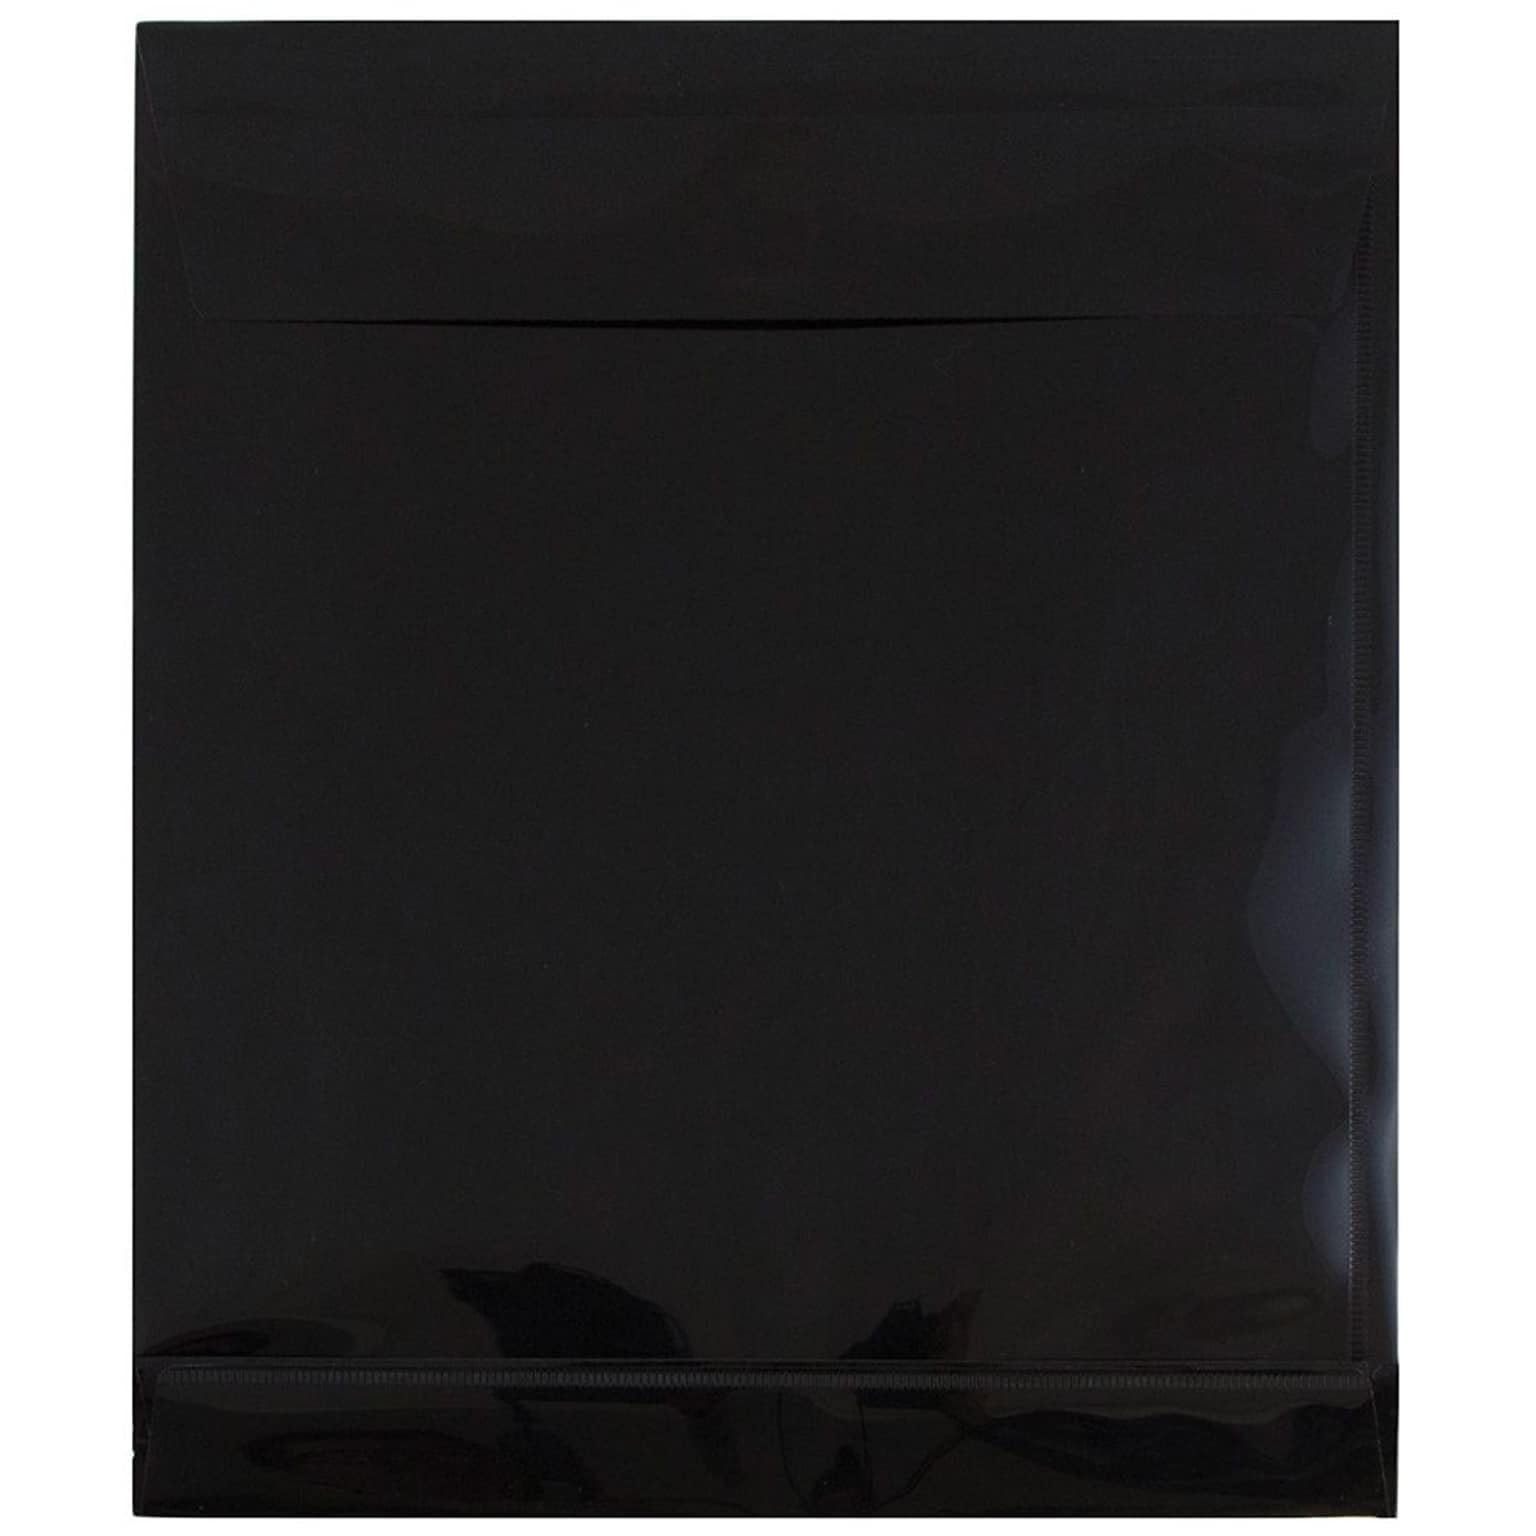 JAM Paper® Plastic Envelopes with Hook & Loop Closure, 1 Expansion, Letter Open End, 9.75 x 11.75, Black, 12/pack (118V1BL)